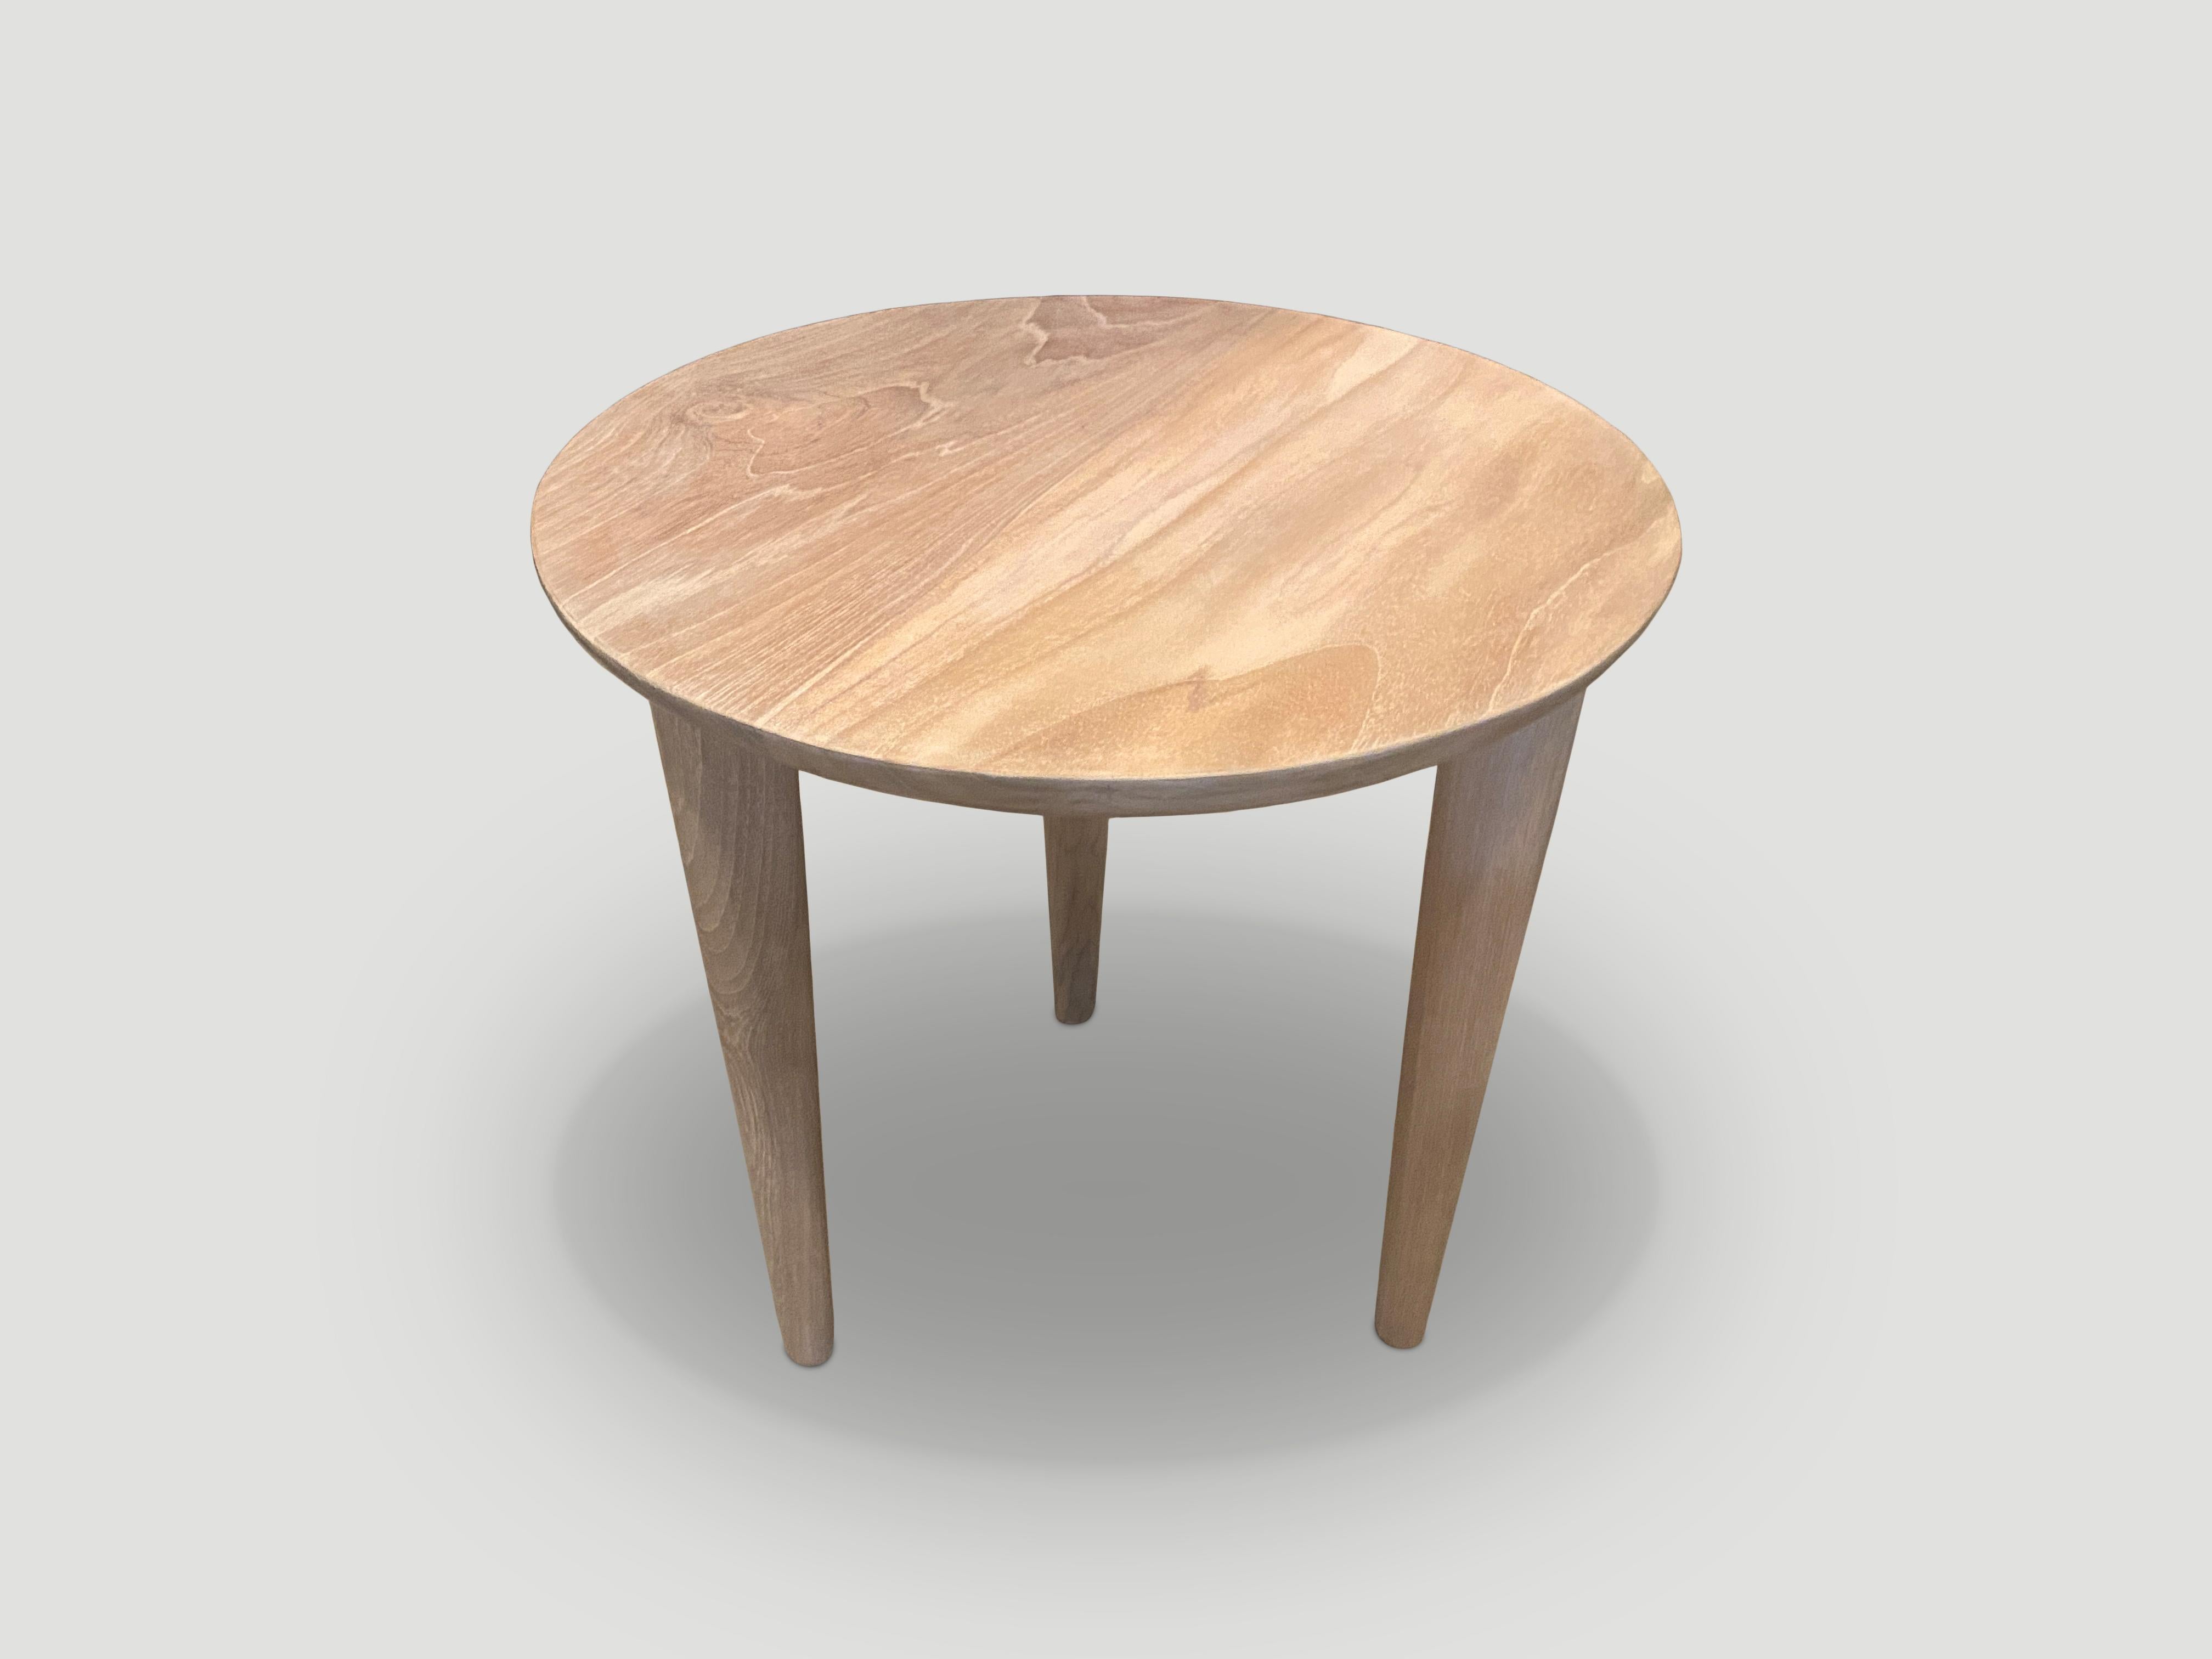 round table leg ideas